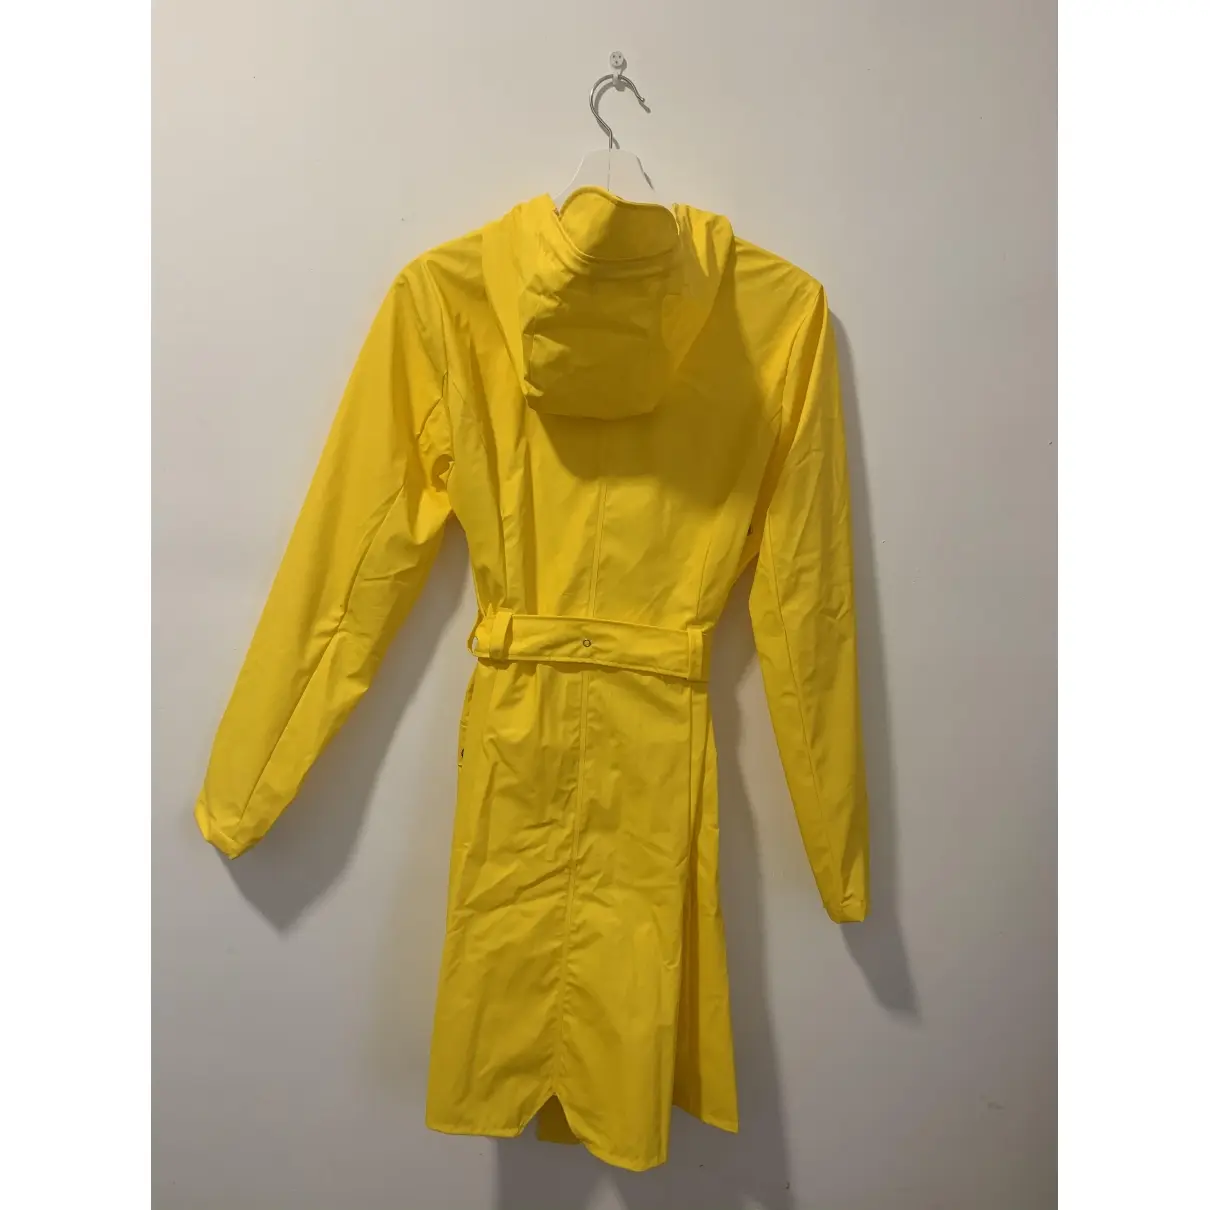 Buy Rains Trench coat online